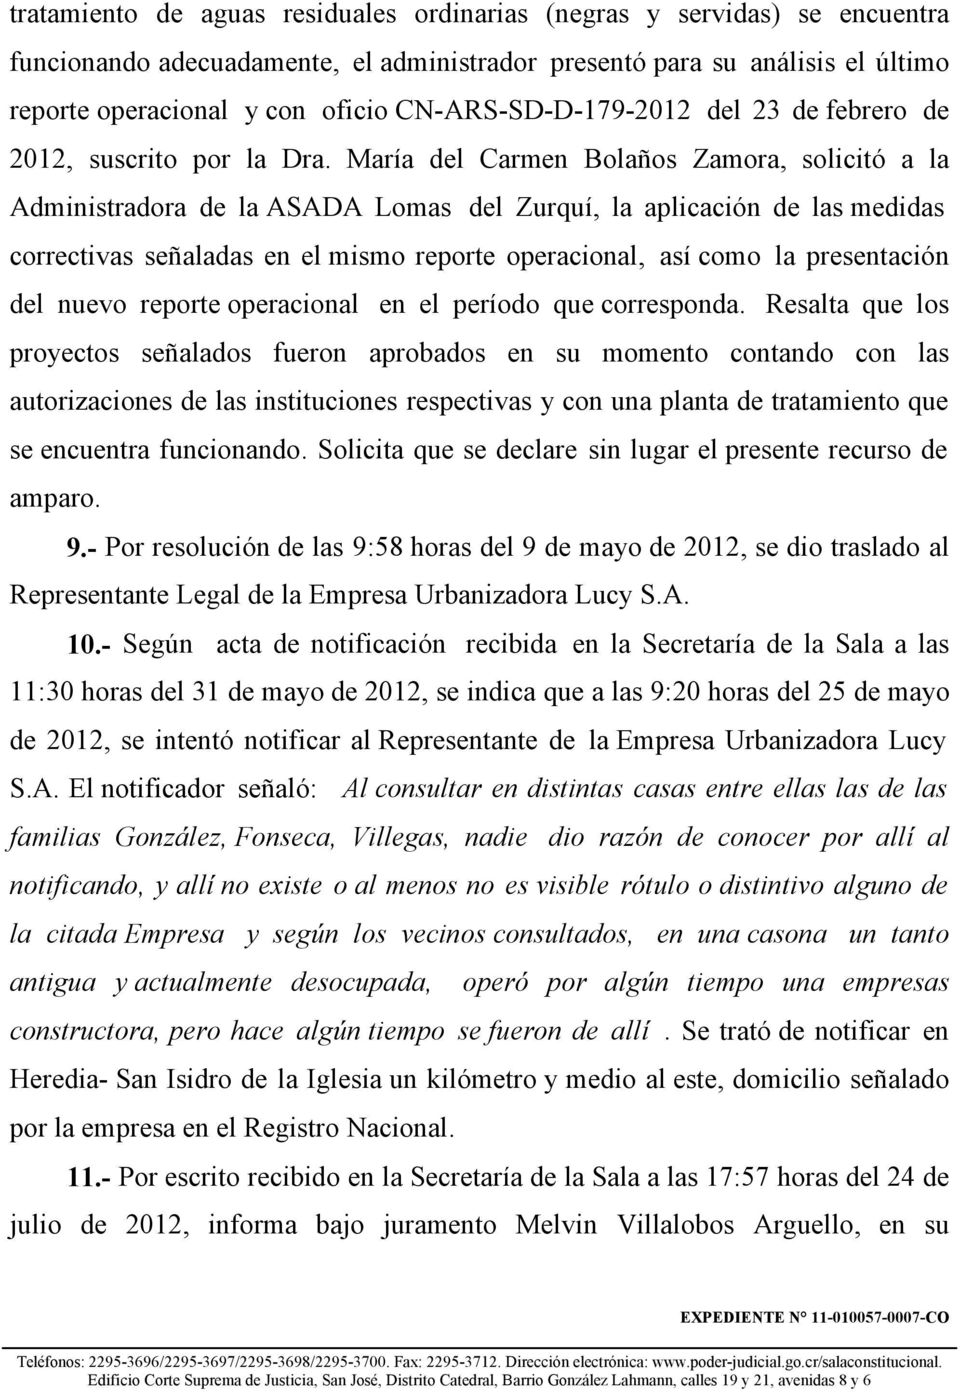 María del Carmen Bolaños Zamora, solicitó a la Administradora de la ASADA Lomas del Zurquí, la aplicación de las medidas correctivas señaladas en el mismo reporte operacional, así como la